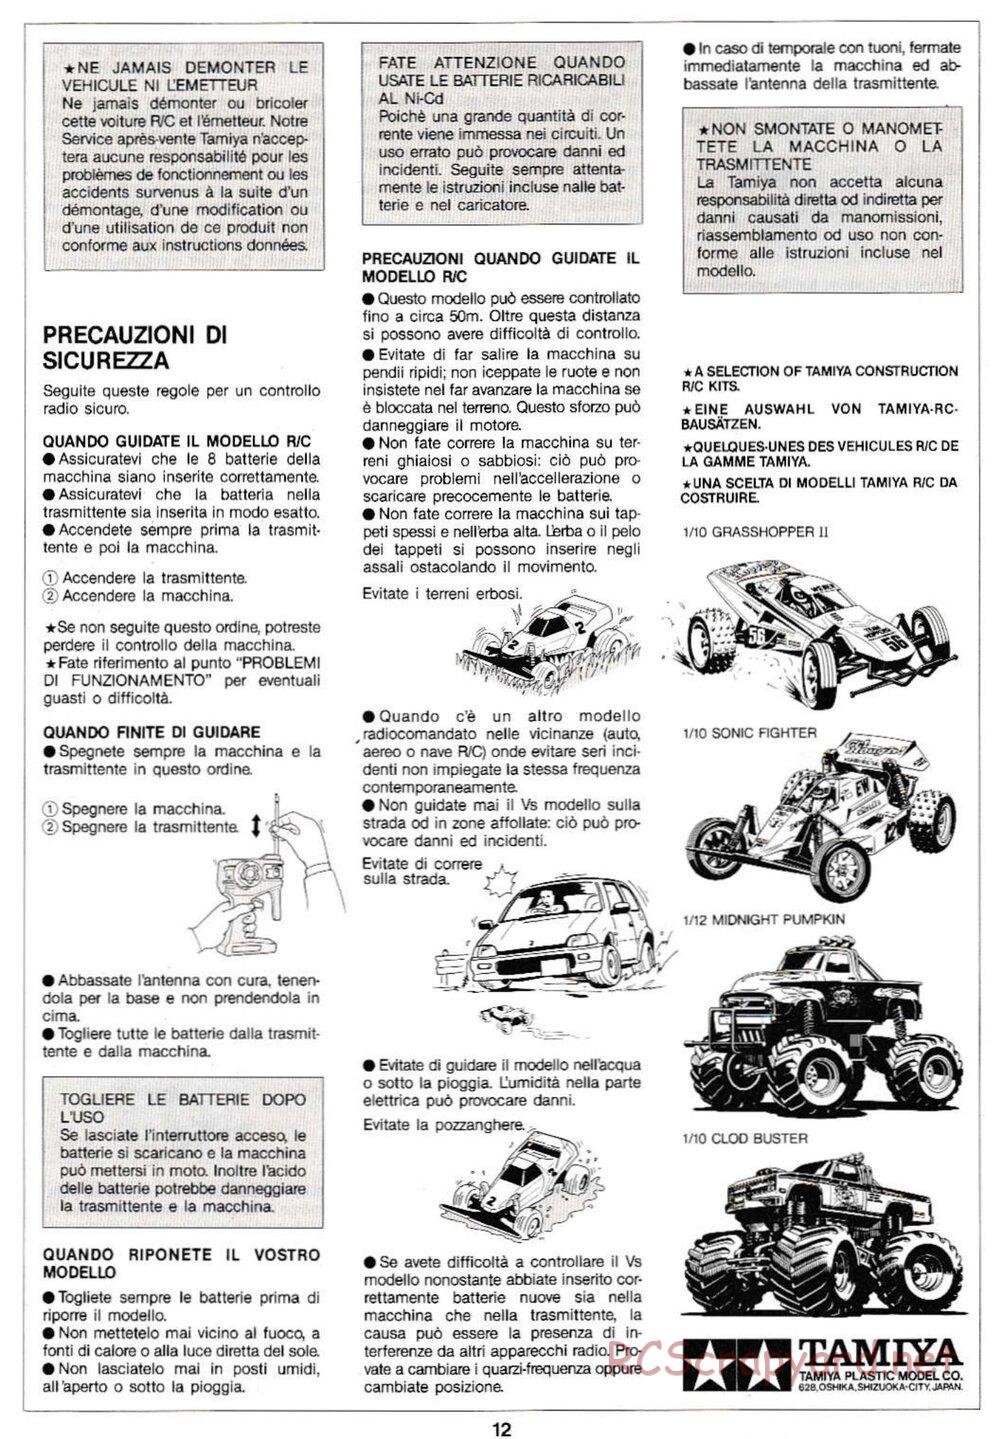 Tamiya - Super Sabre QD Chassis - Manual - Page 12